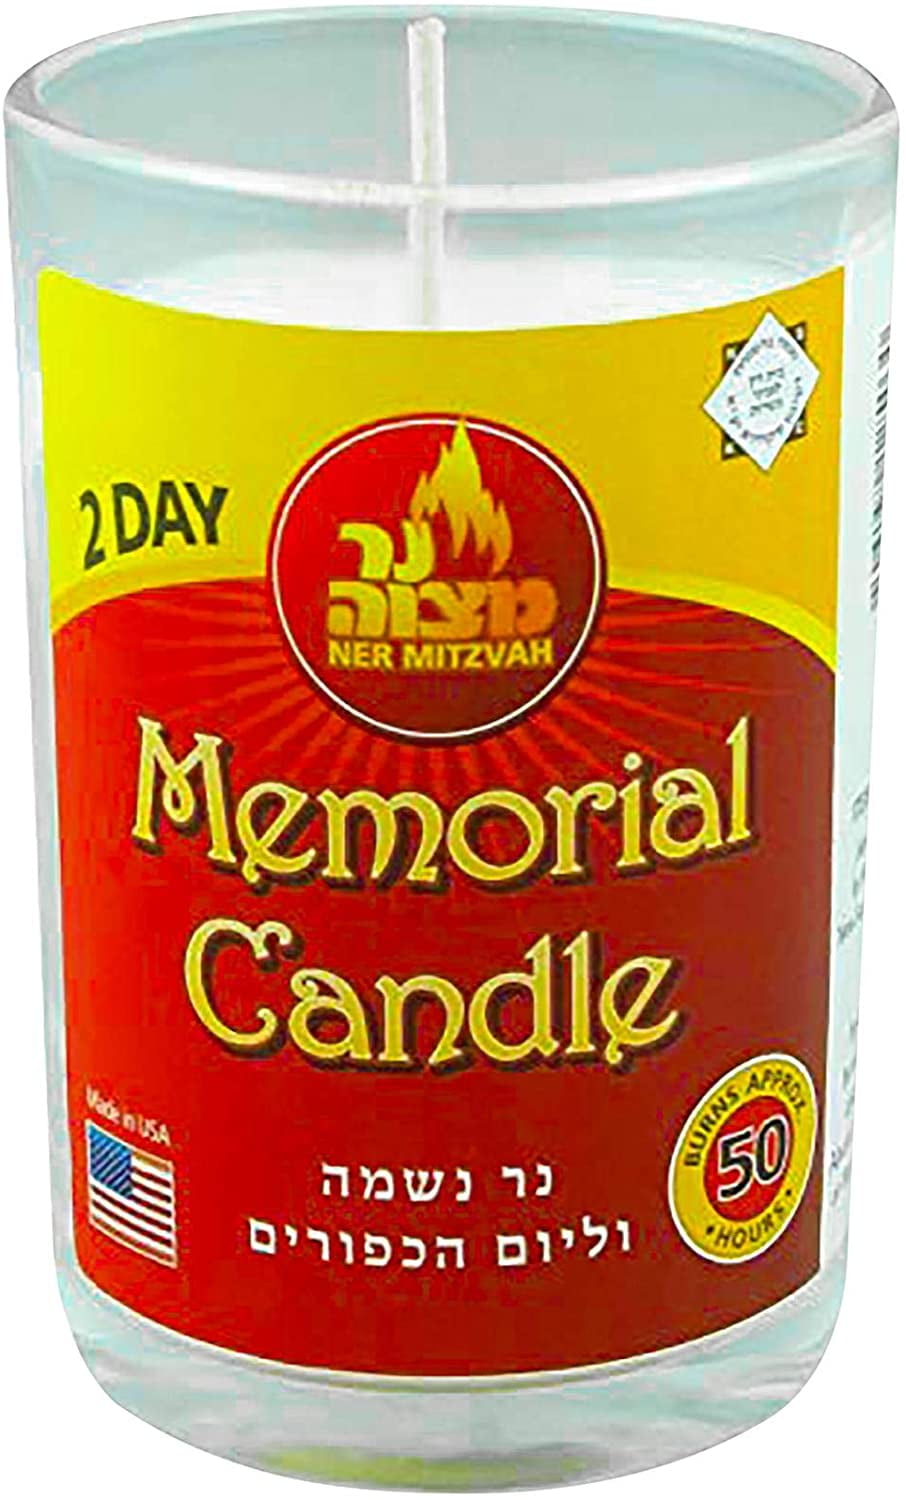 26 PACK-24 Hour Memorial Candle Yizkor Yahrzeit Yahrtzeit Yom Kippur Ner Mitzvah 